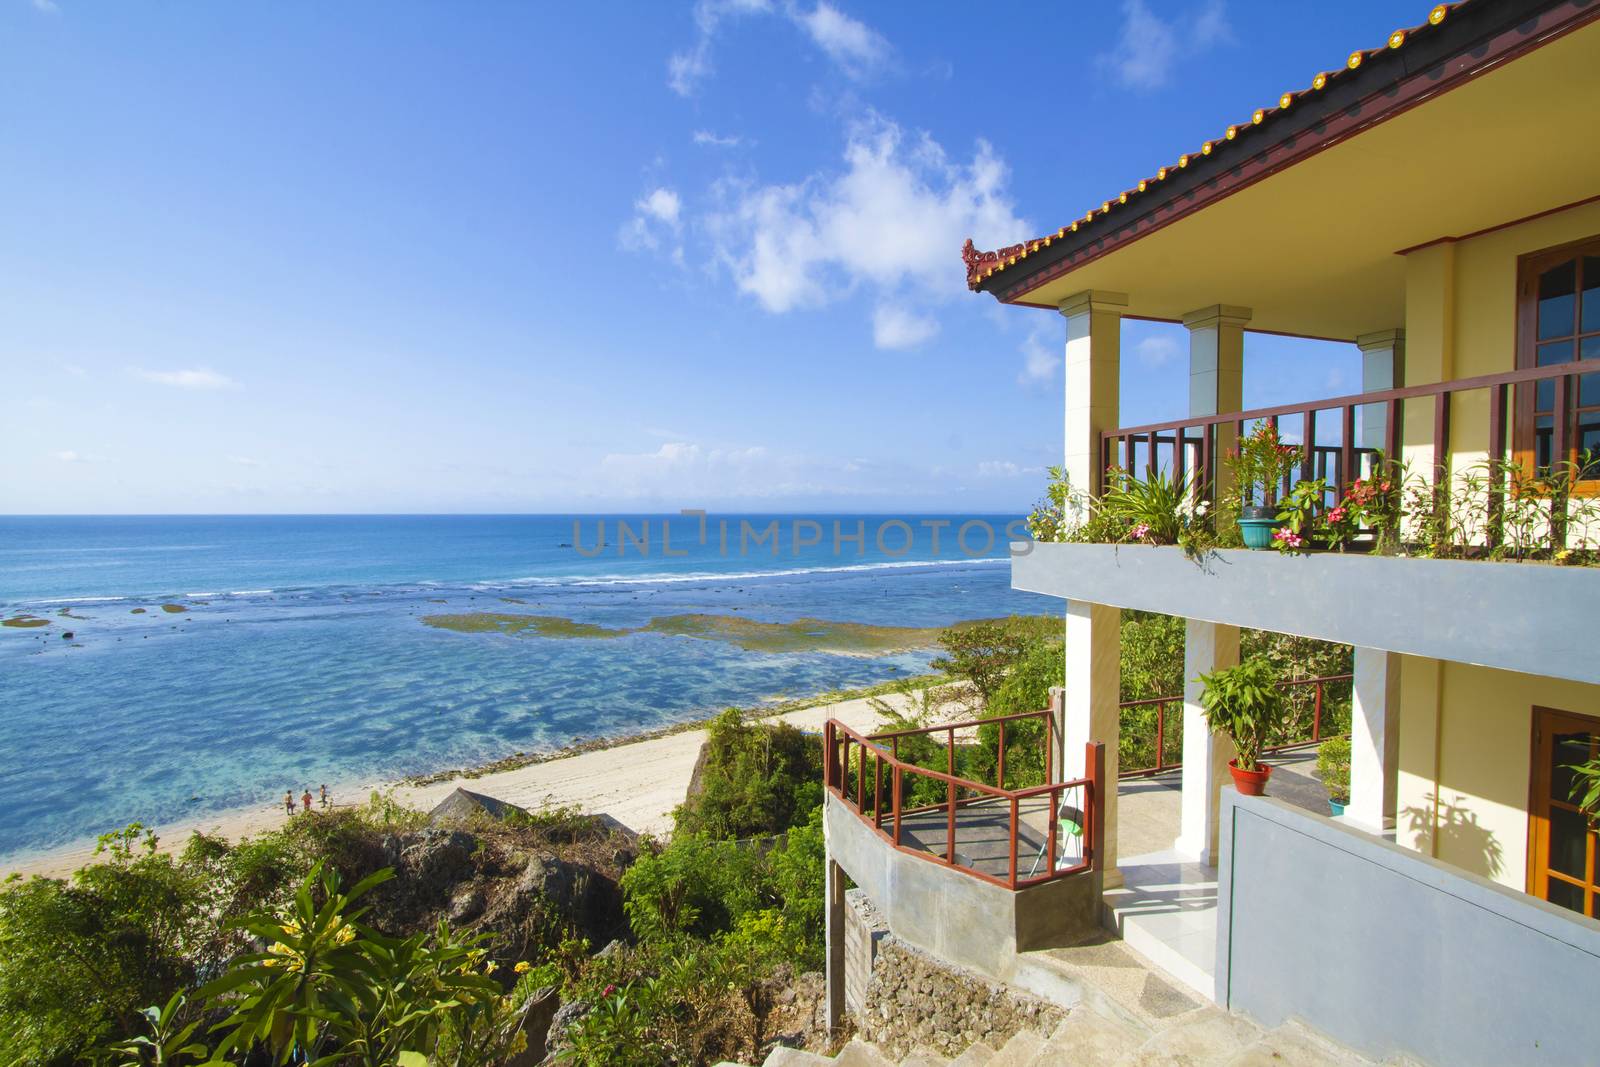 House at tropical beach.